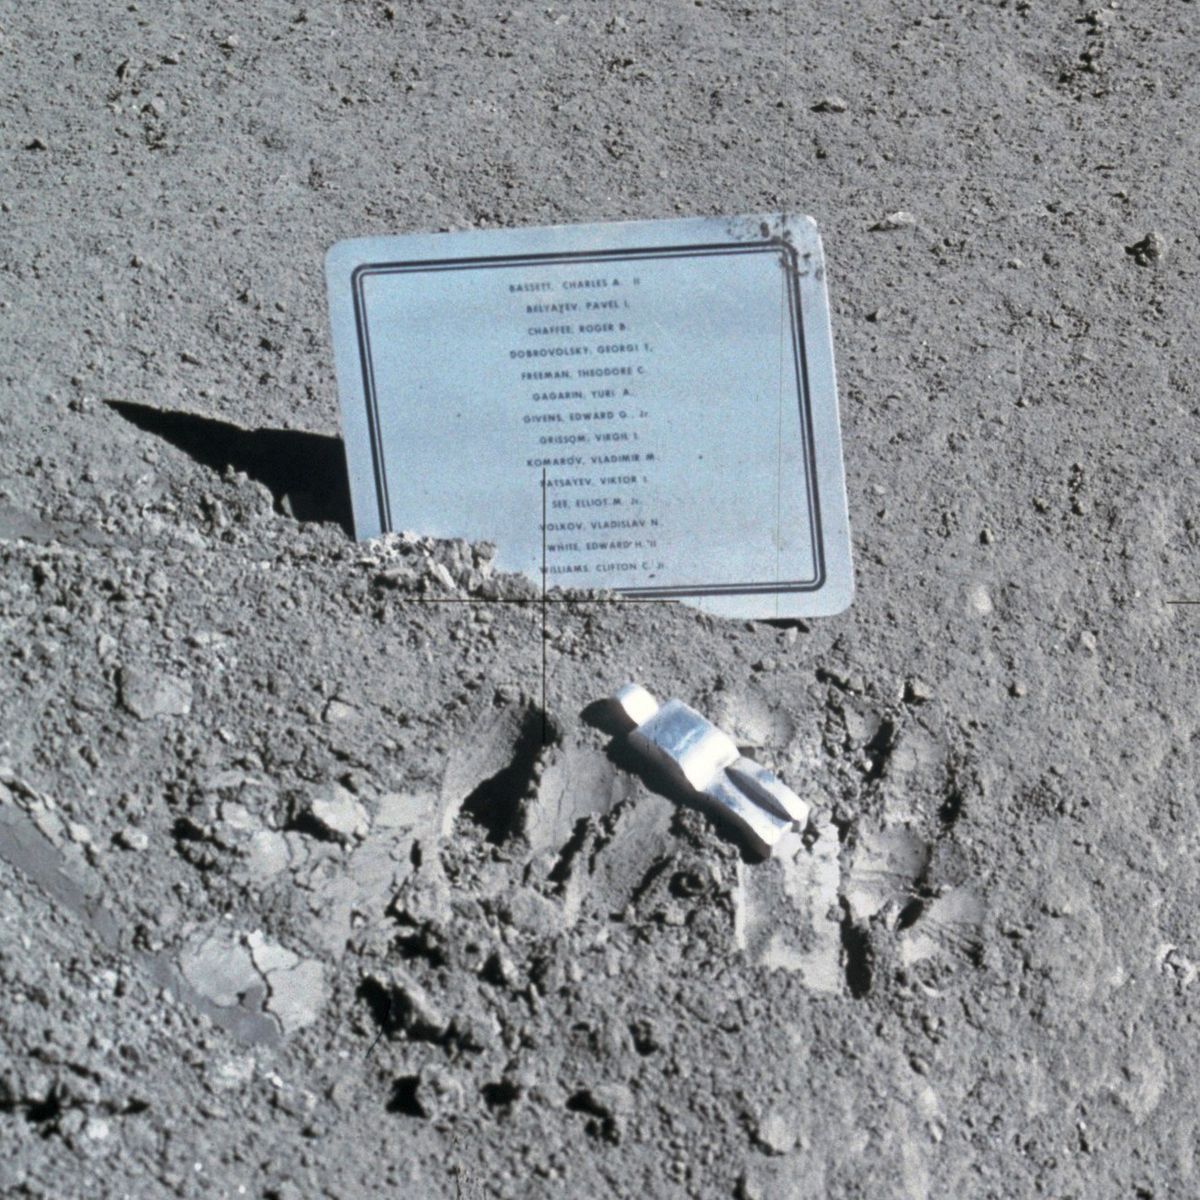 Fallen Astronaut de Paul Van Hoeydonck (1971)L'œuvre la plus originale du thread car elle se trouve... sur la lune ! (dans la crevasse de Hardley)Elle fut déposée à l'insu de la NASA accompagnée d'une plaque commémorative des astronautes décédés dans la course à l'espace